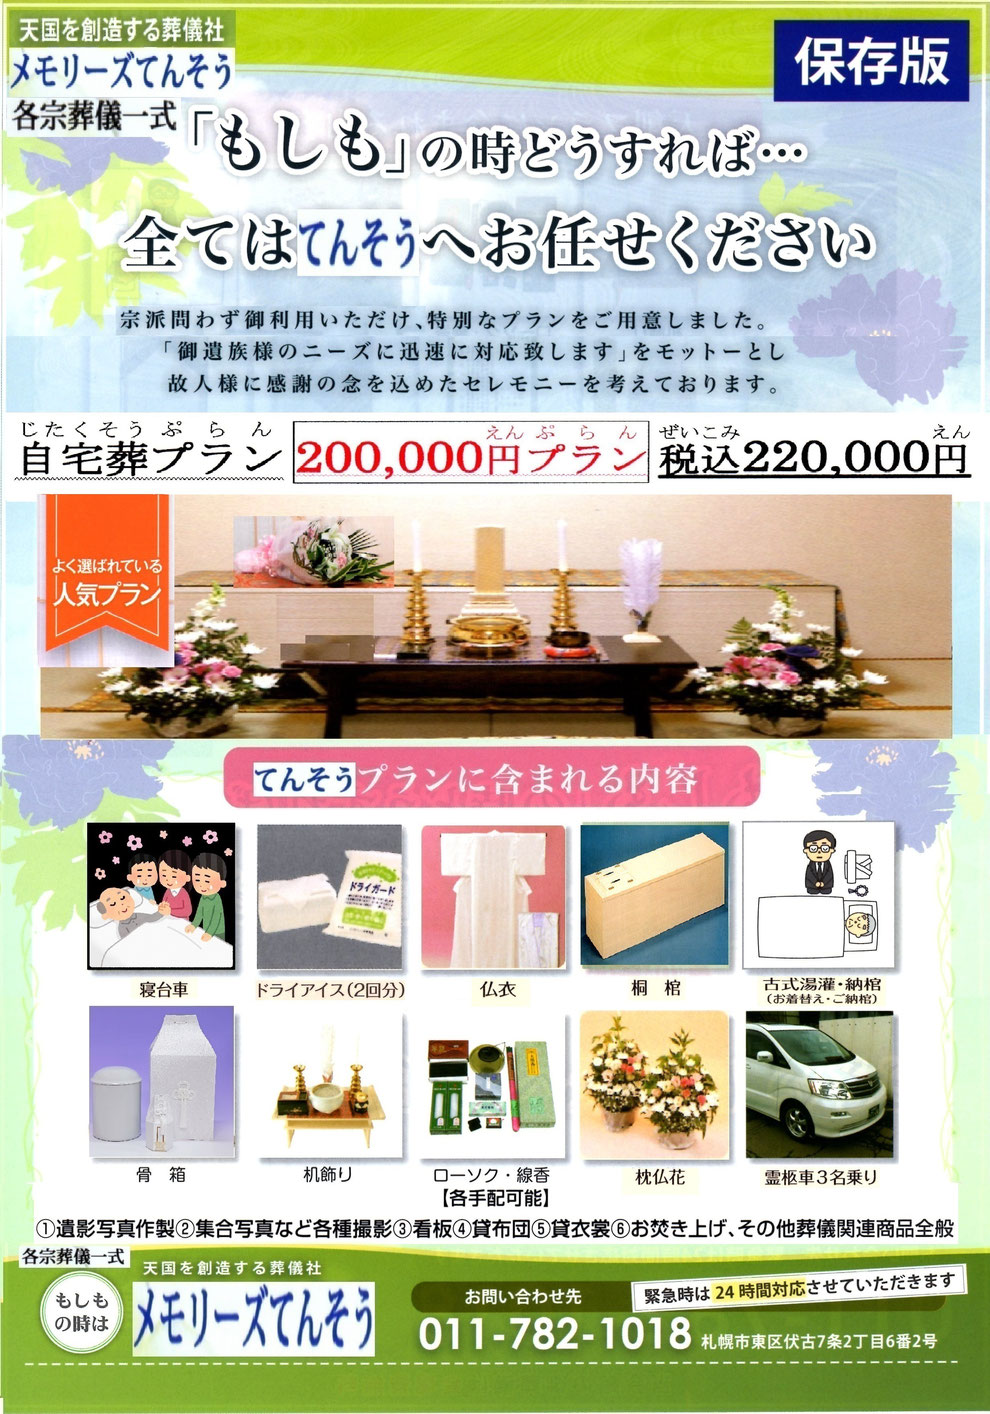 札幌家族葬メモリーズてんそう 葬儀・家族葬220,000円プラン